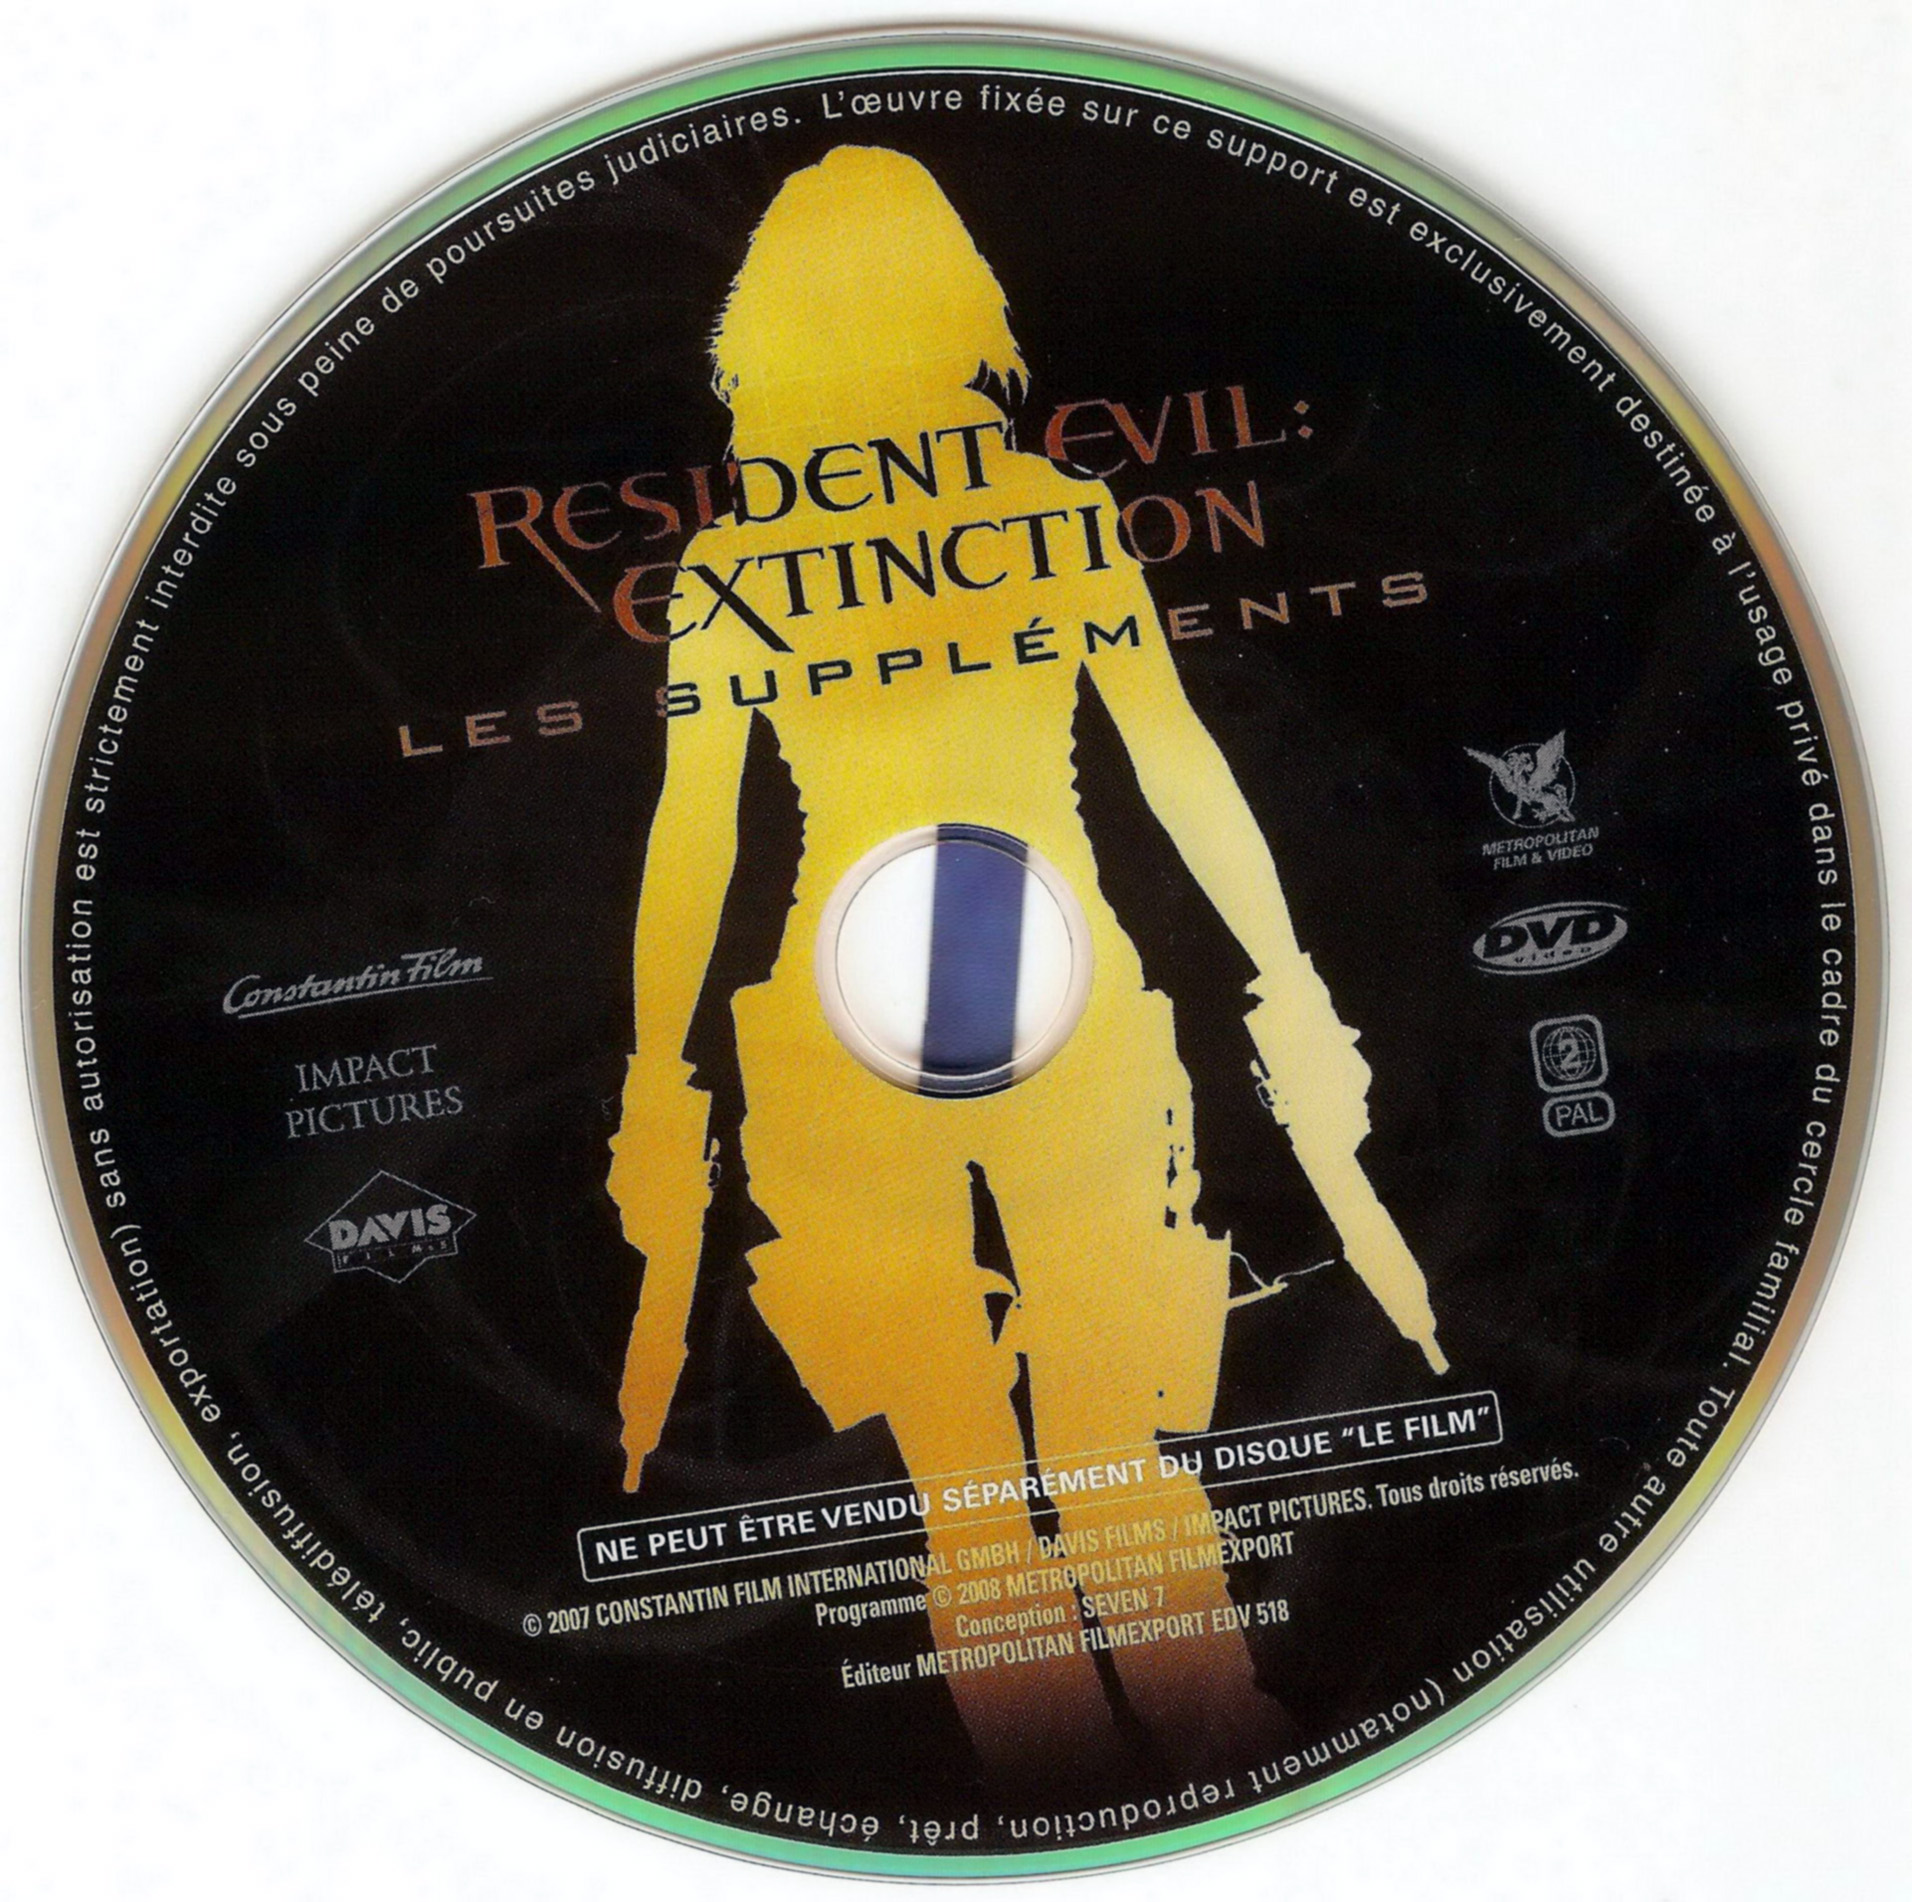 Resident evil extinction DISC 2